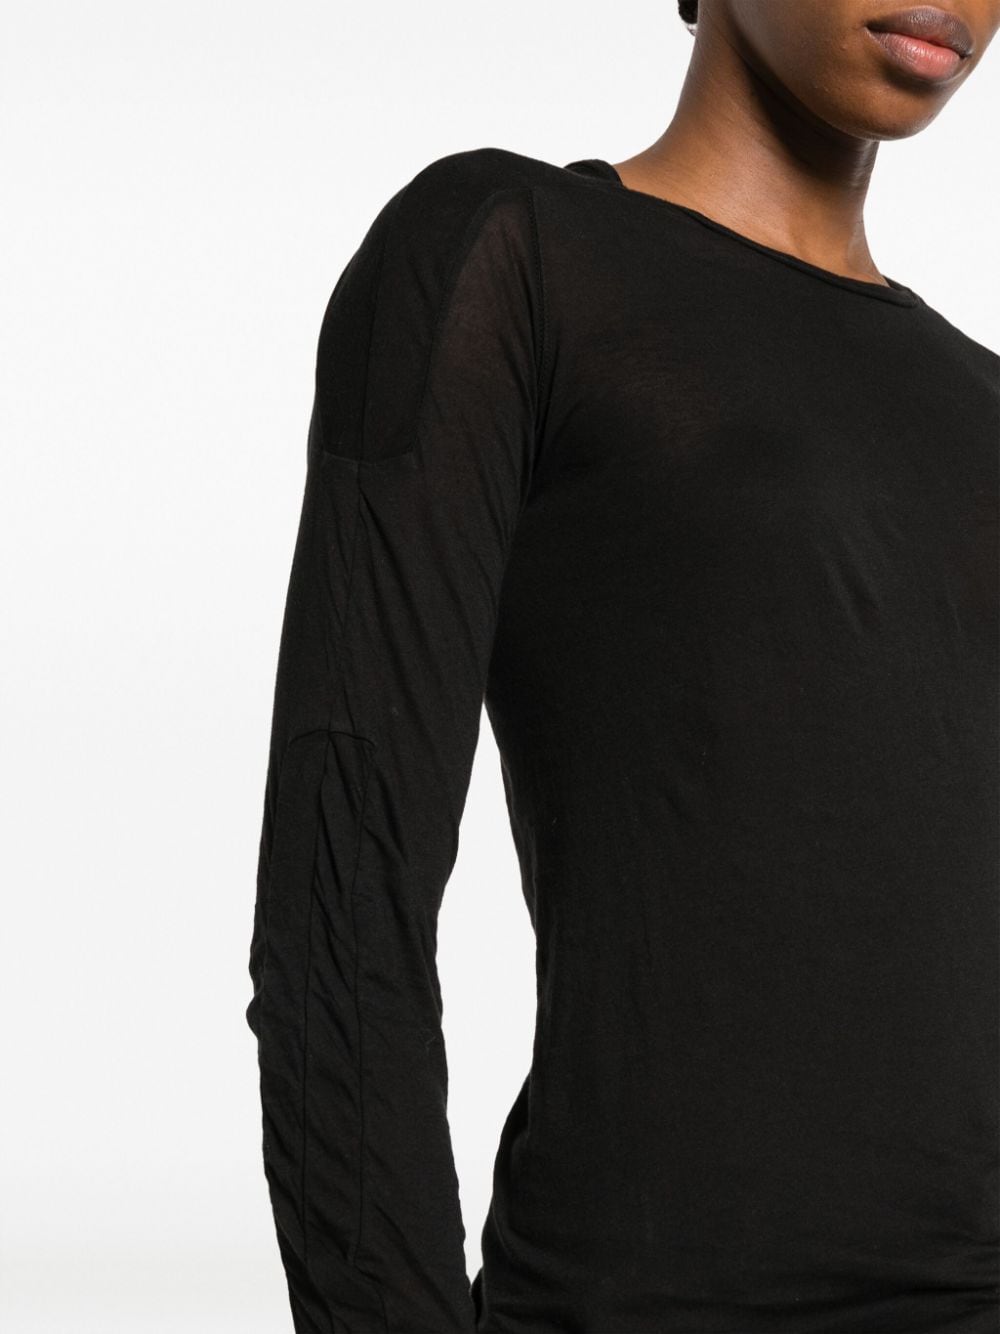 オーガニックコットン ダメージ加工 ロングスリーブTシャツ - ブラック